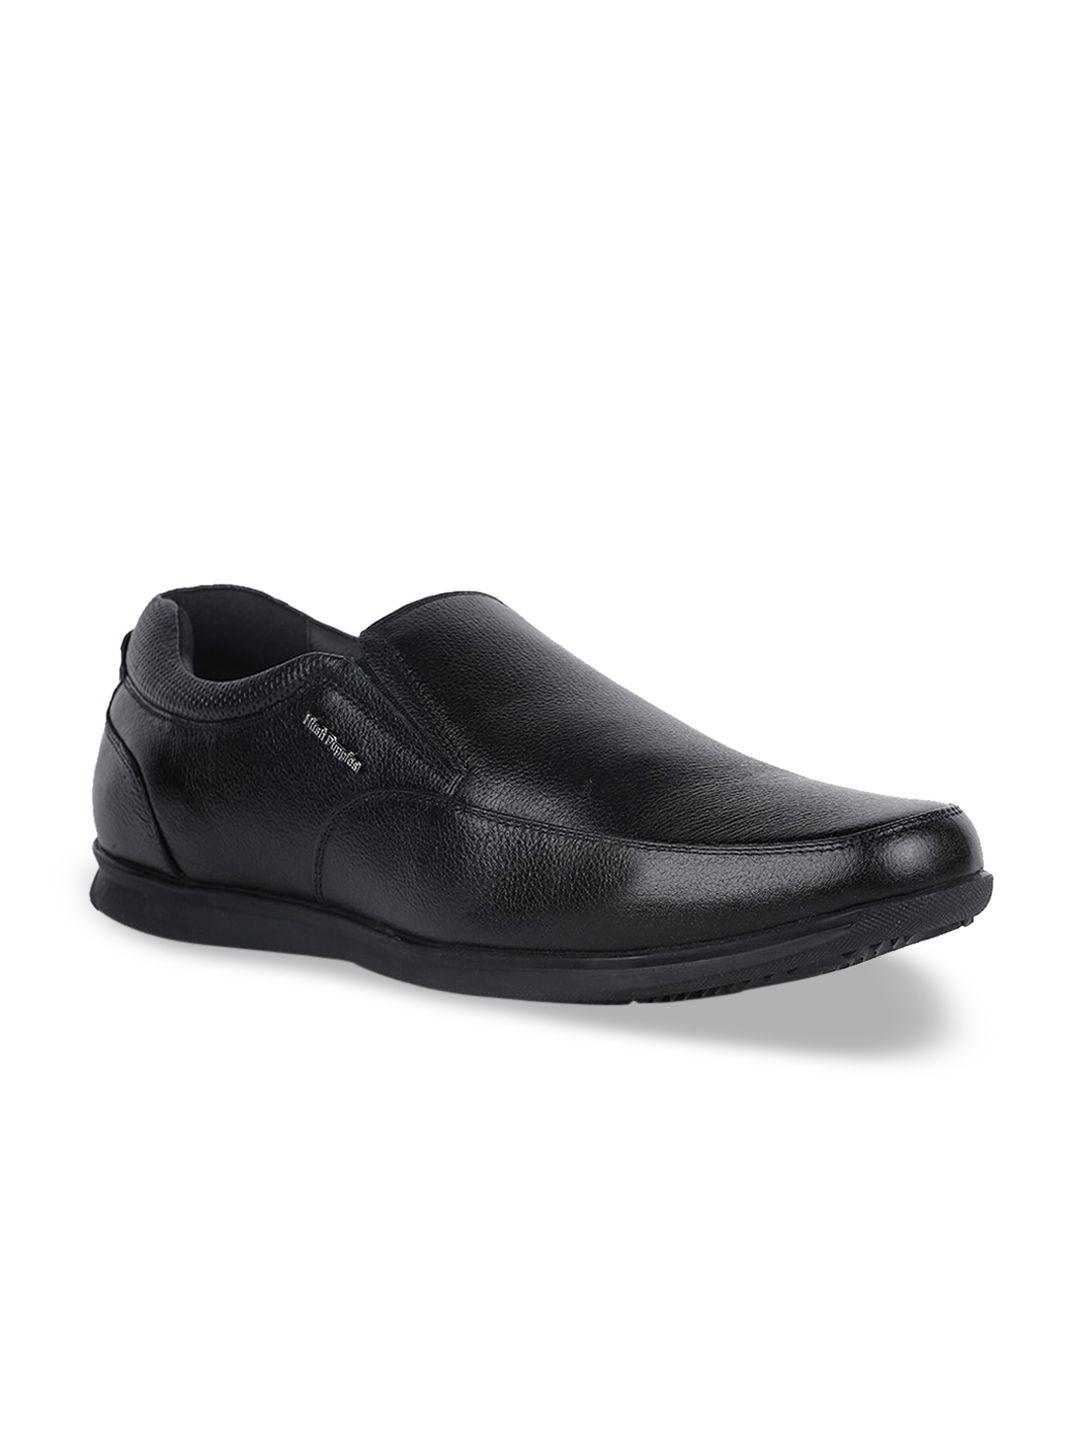 bata men black solid formal leather slip-on shoes